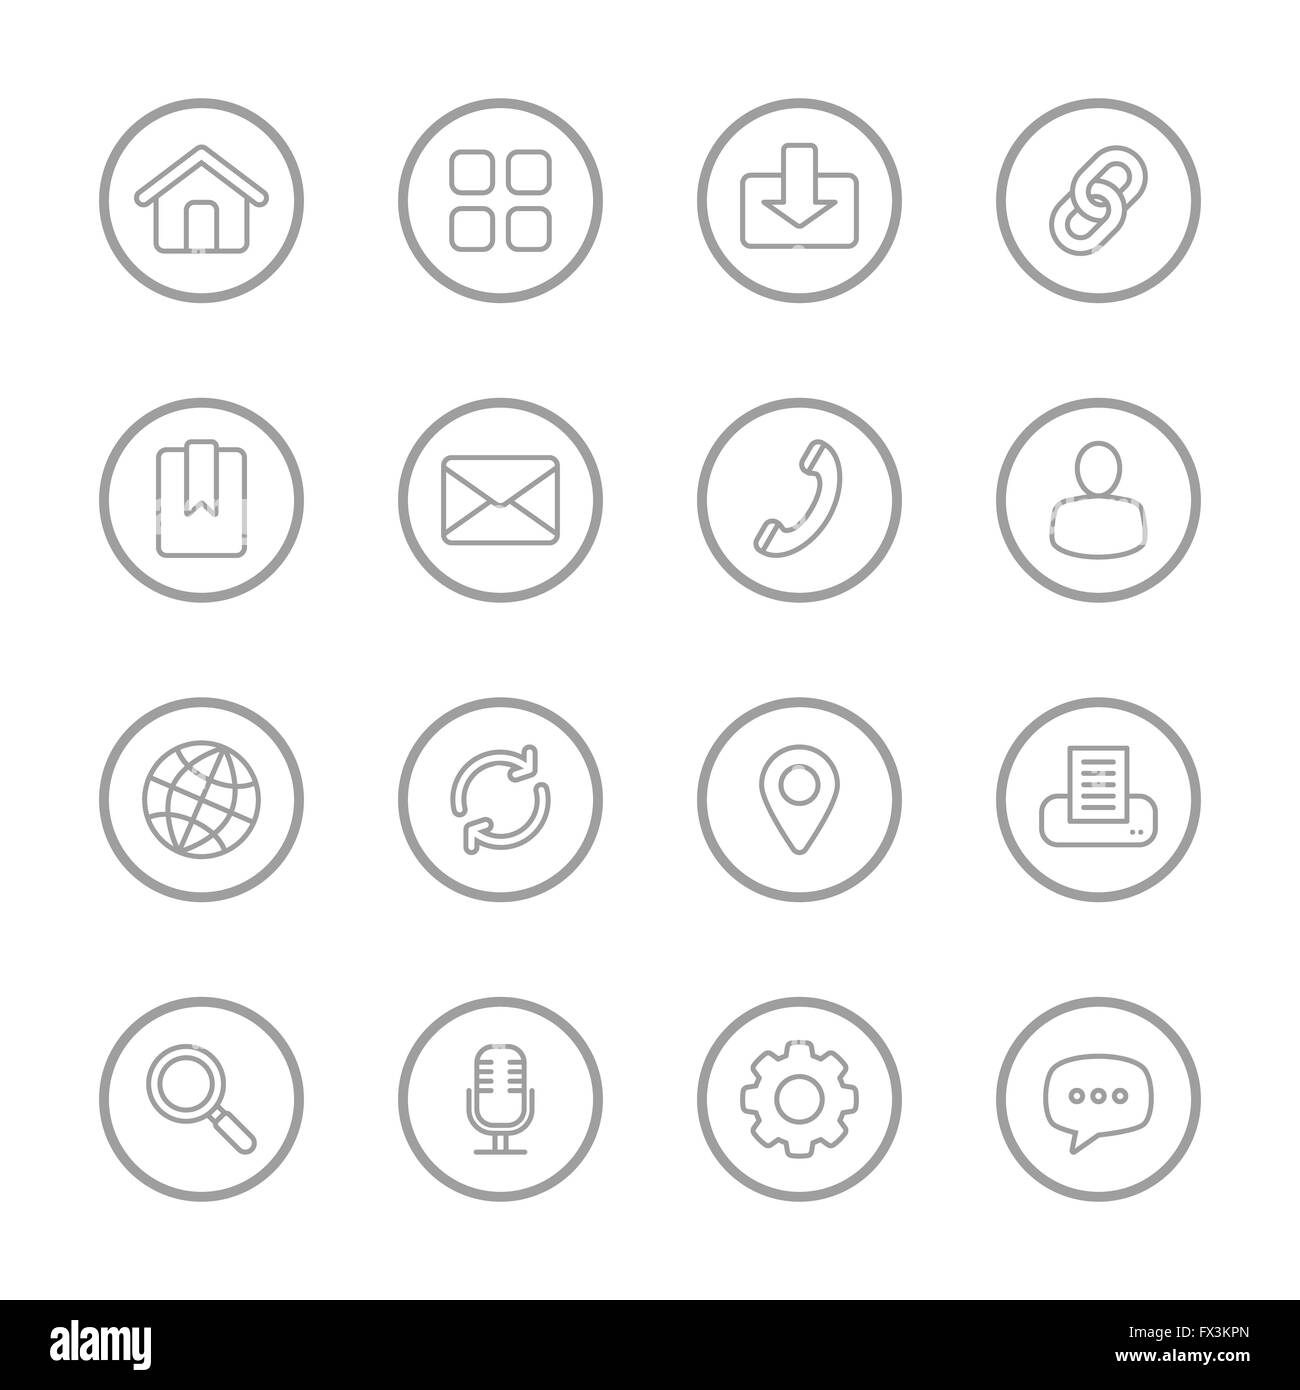 [JPEG] gray line web icon set avec châssis circulaire pour le web, l'interface utilisateur, l'infographie et des applications mobiles Banque D'Images